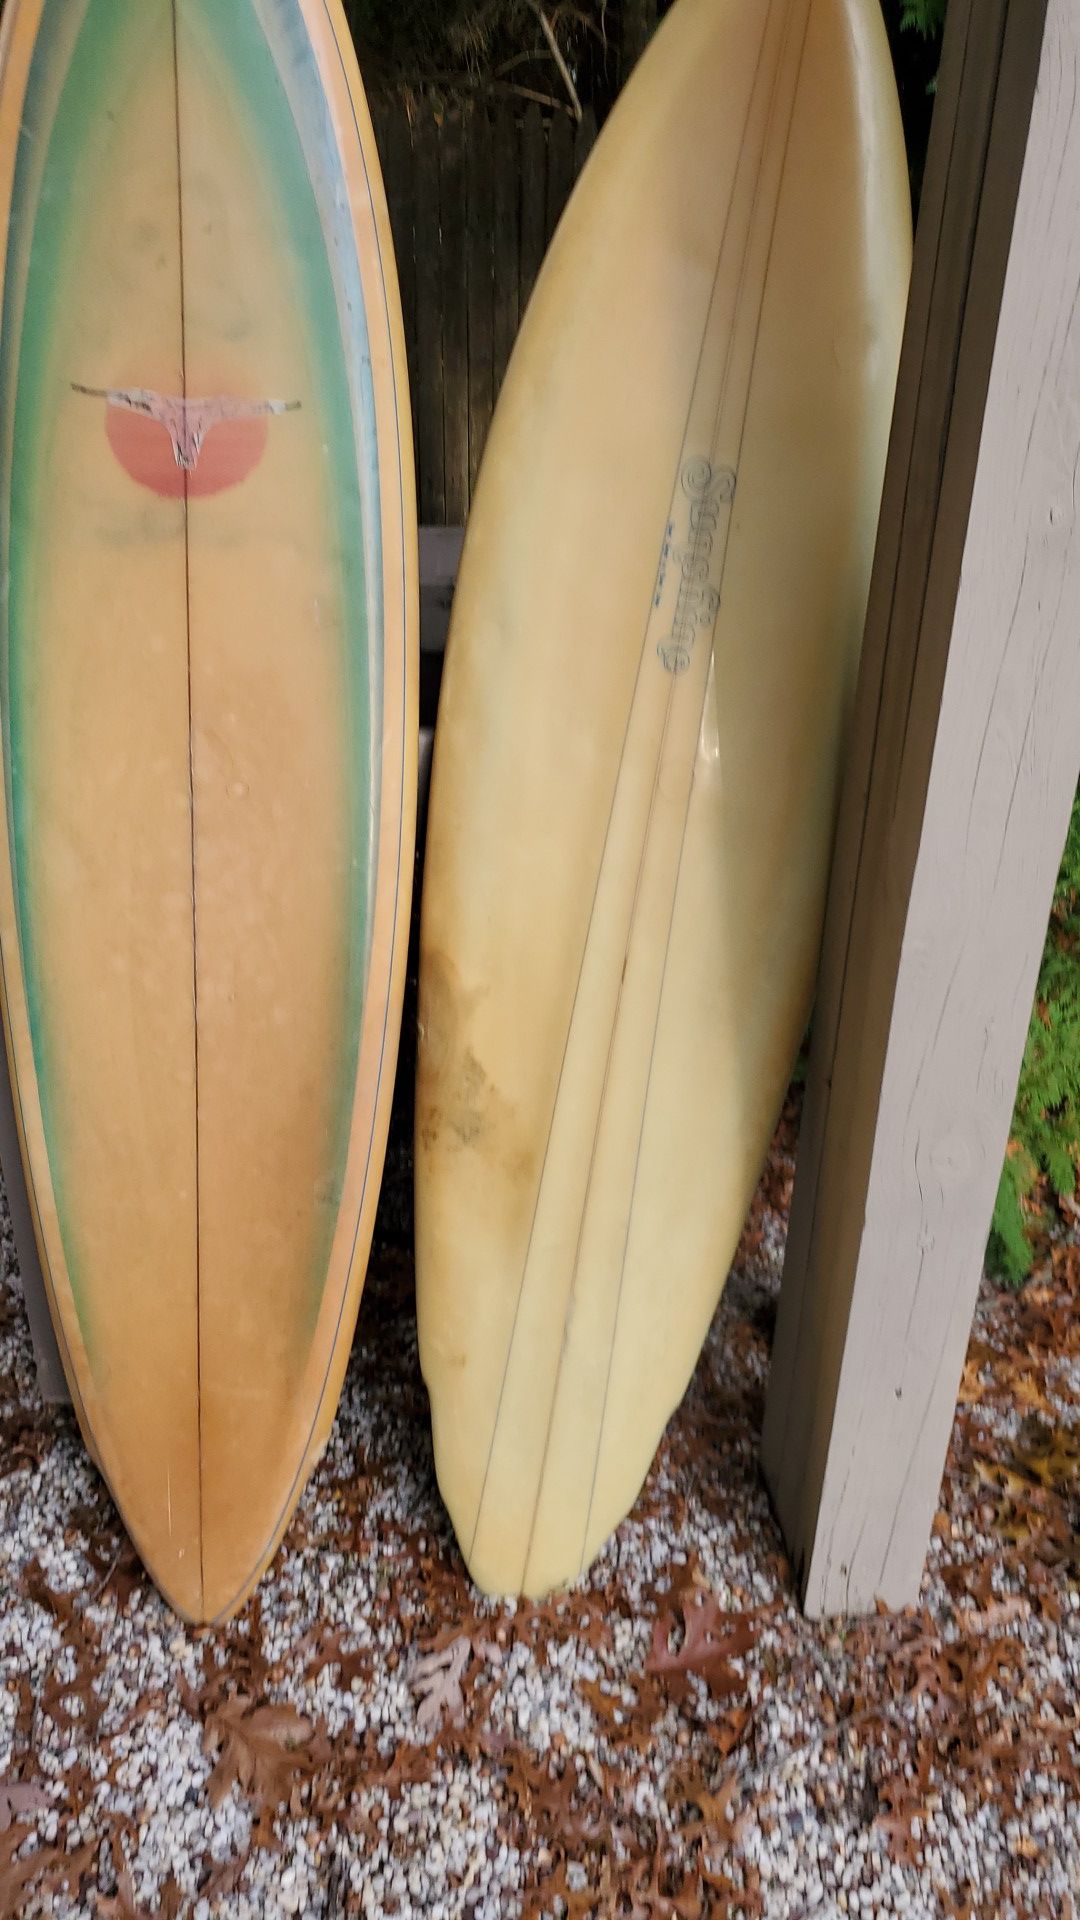 2 vintage surfboards